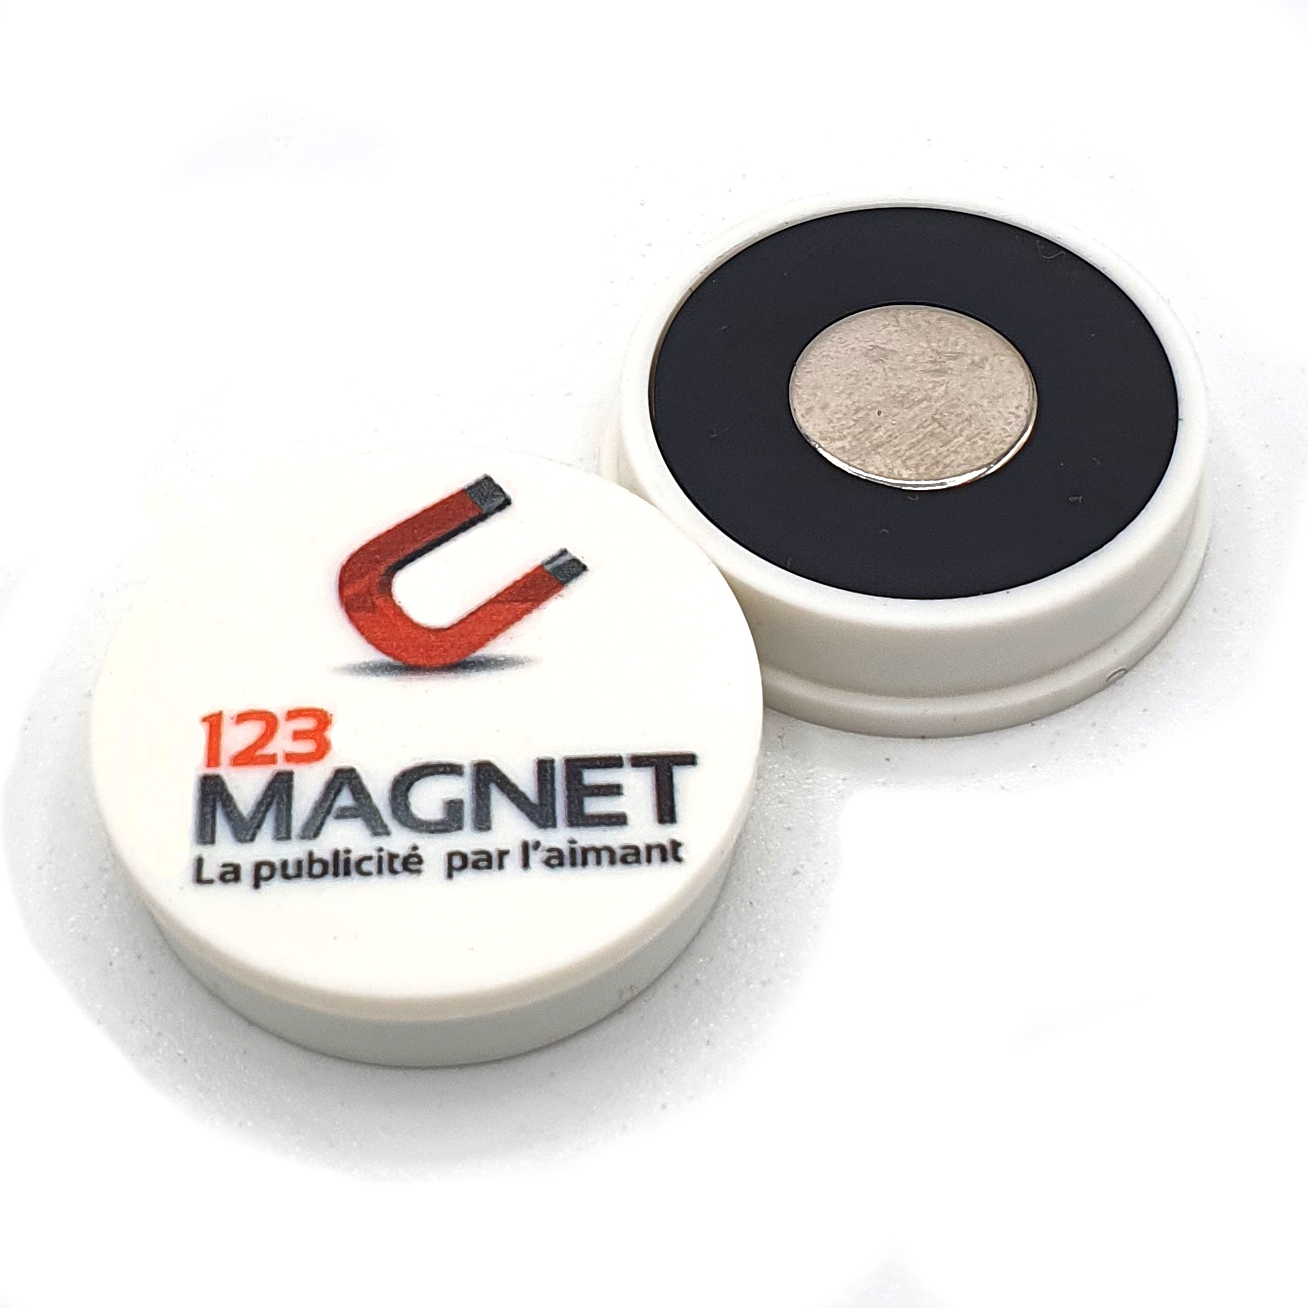 Magnet aimant personnalisé - Magnet Frigo peronnalisable